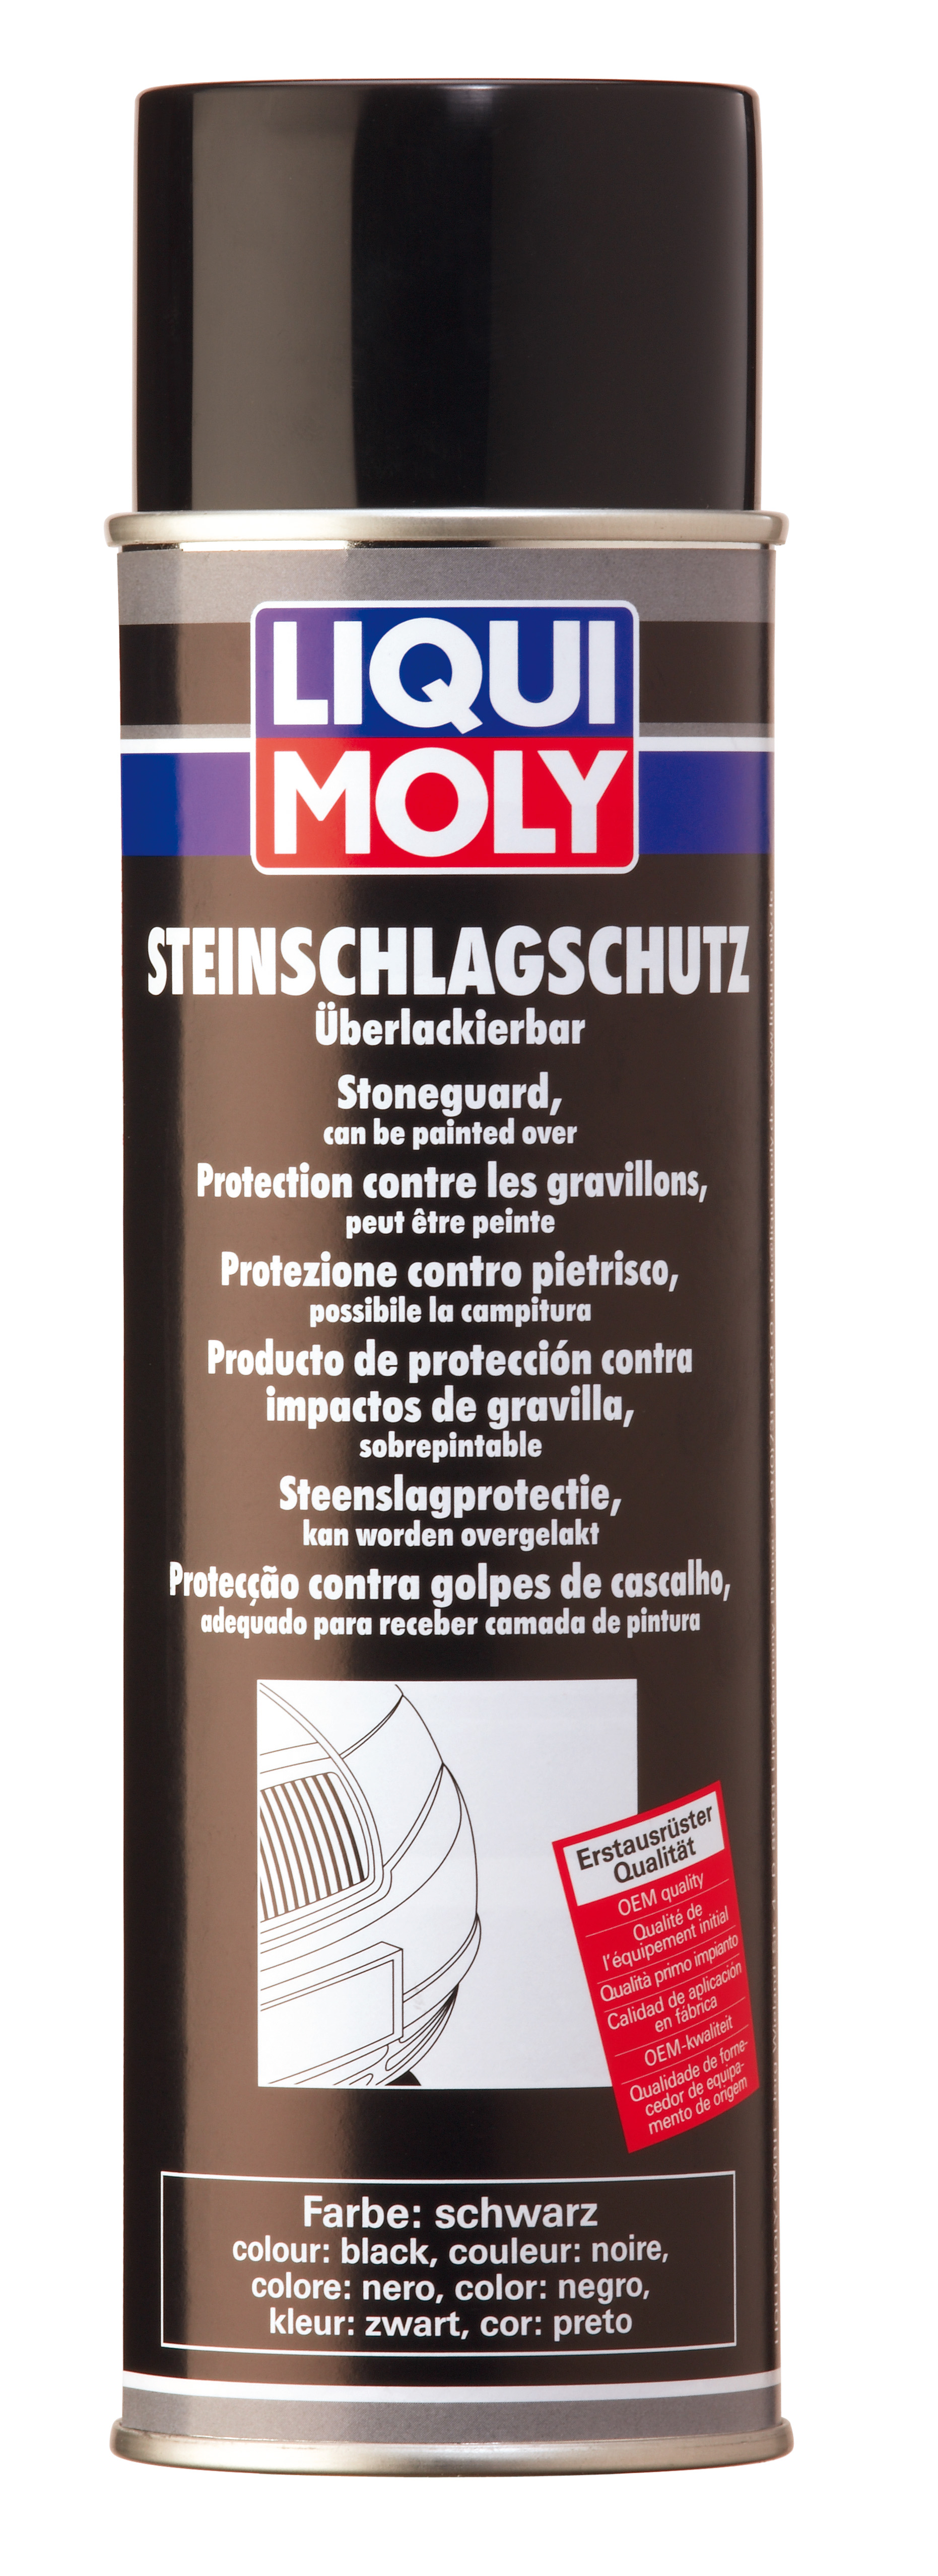 Антигравий черный (спрей) Steinschlag-Schutz schwarz, 500мл - Liqui Moly 6109